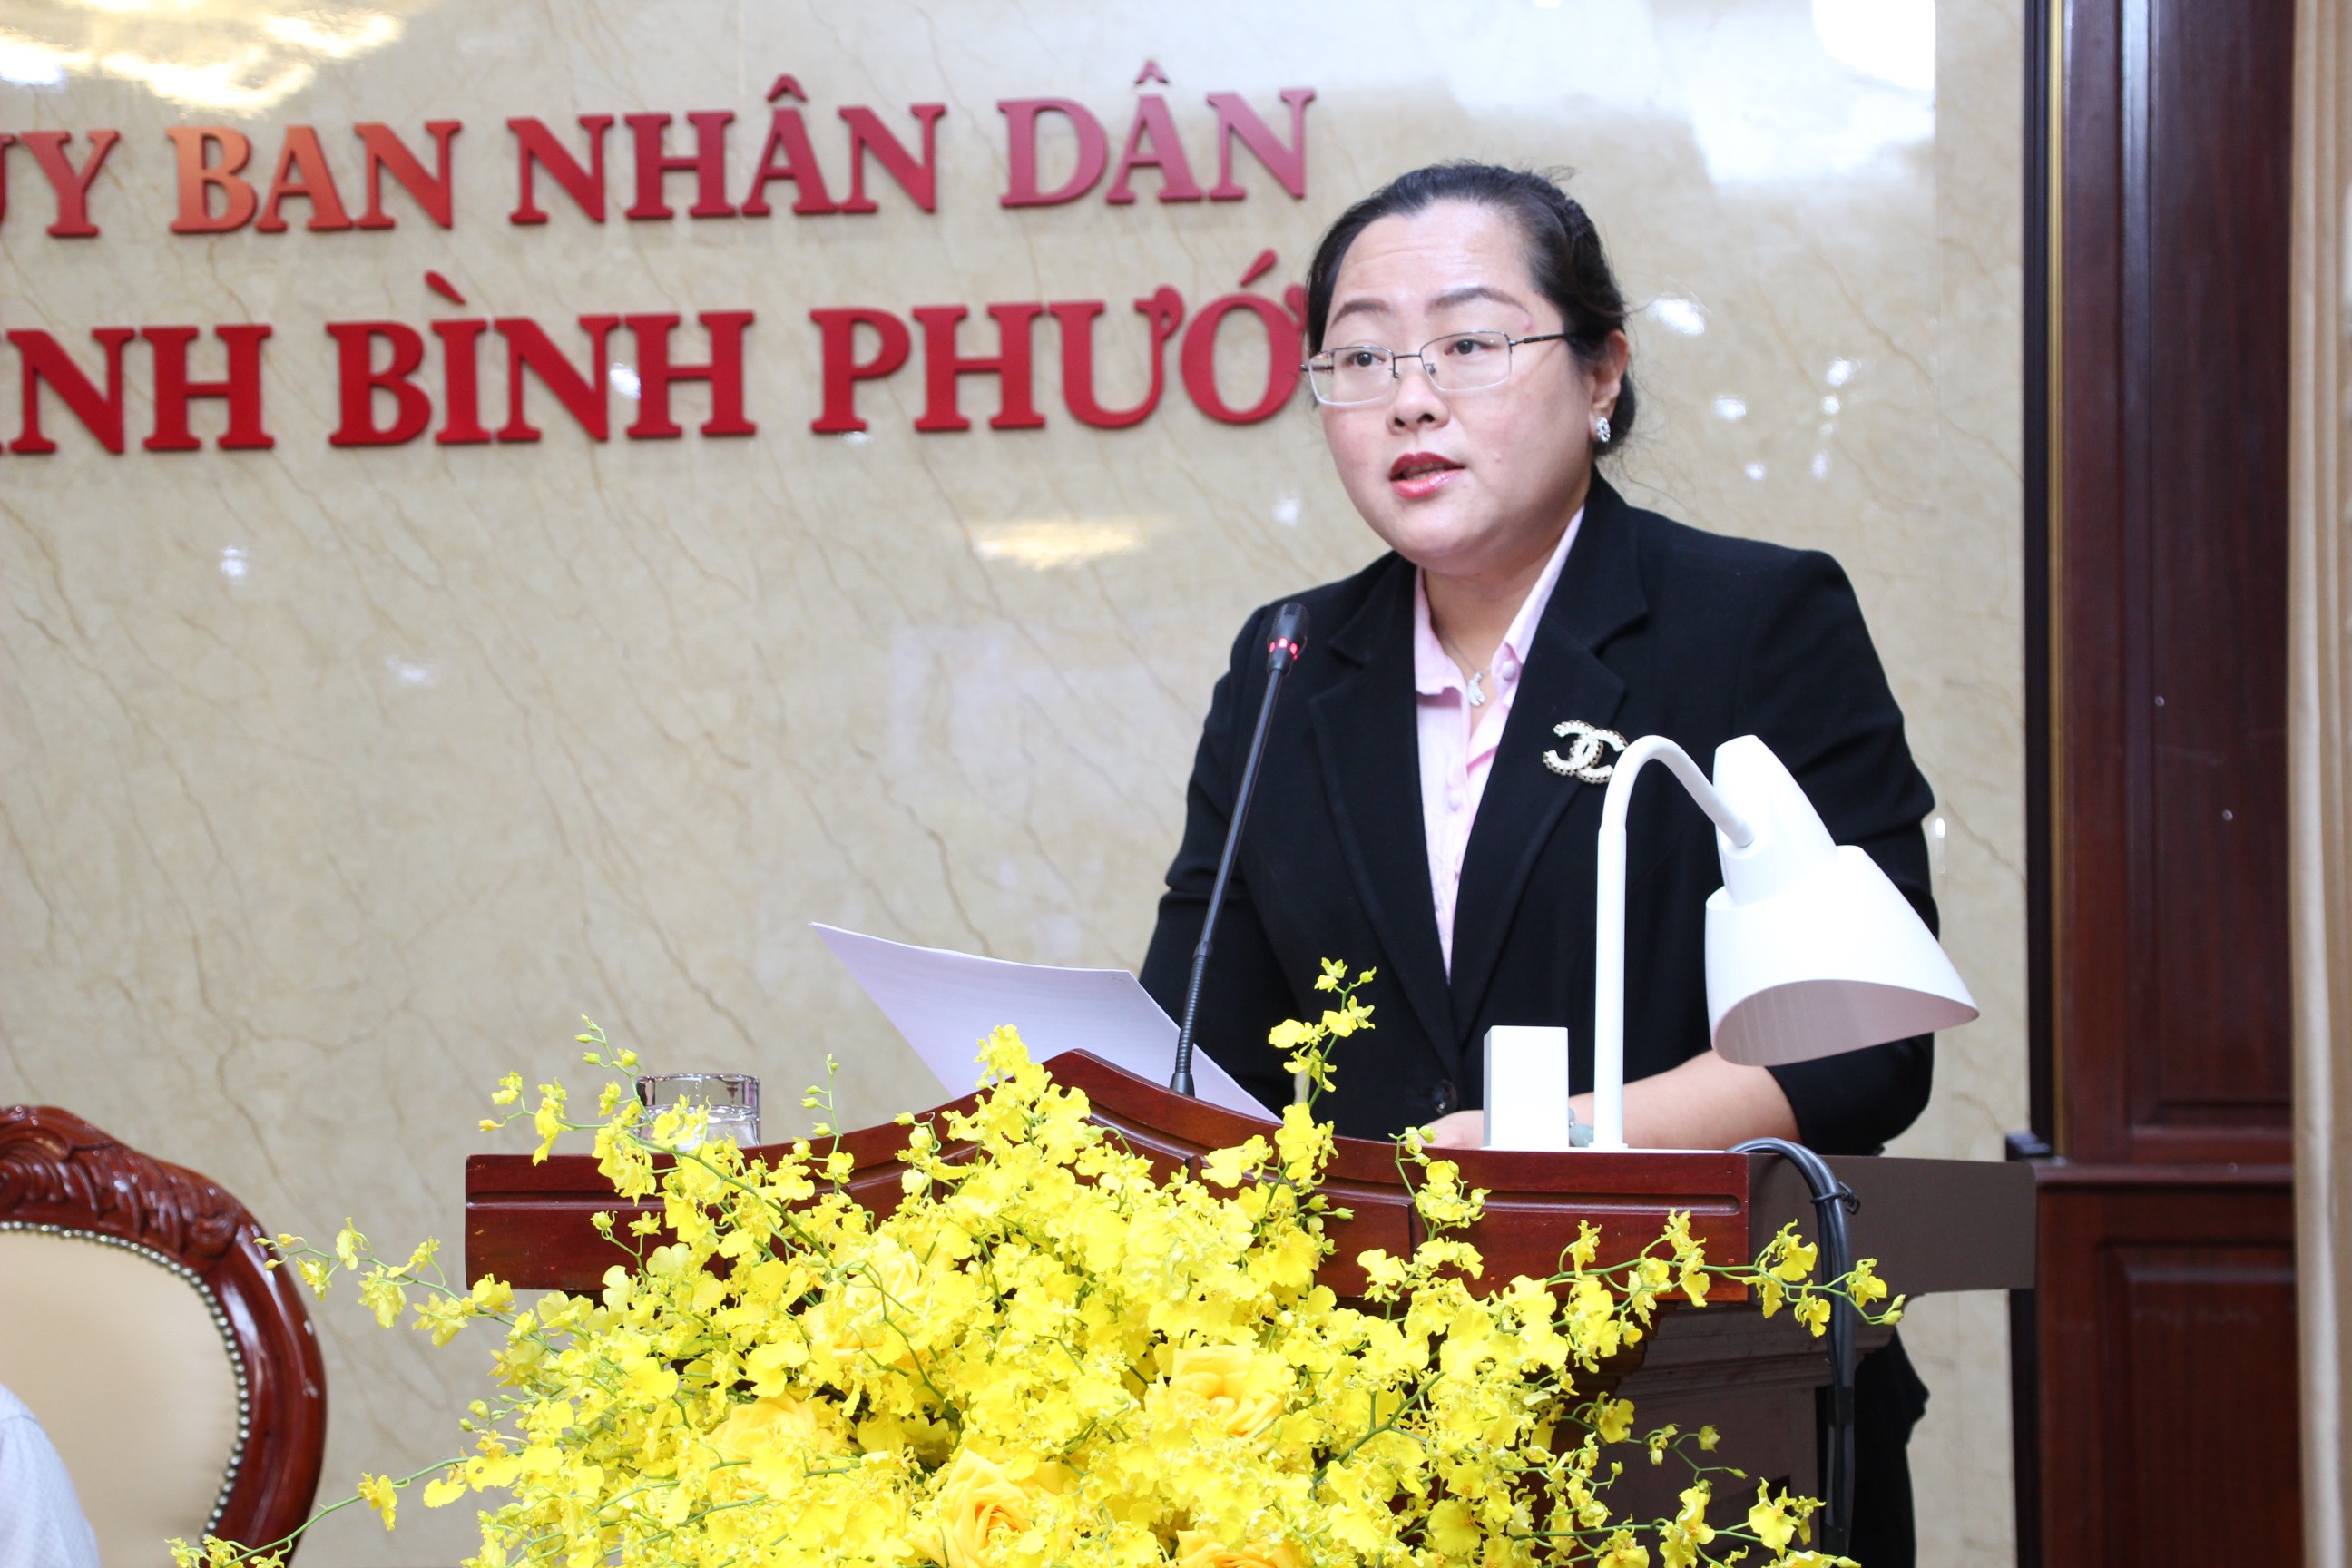 Bà Trần Thị Hồng Minh – Phó Giám đốc tiếp thị Becamex IDC trao đổi tại Hội thảo.